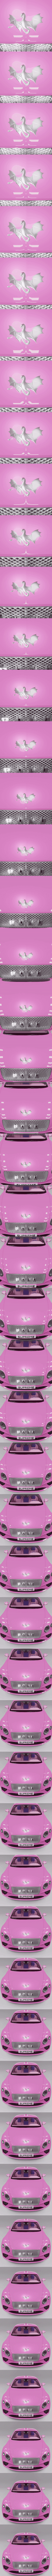 Supreme Prime in Pink